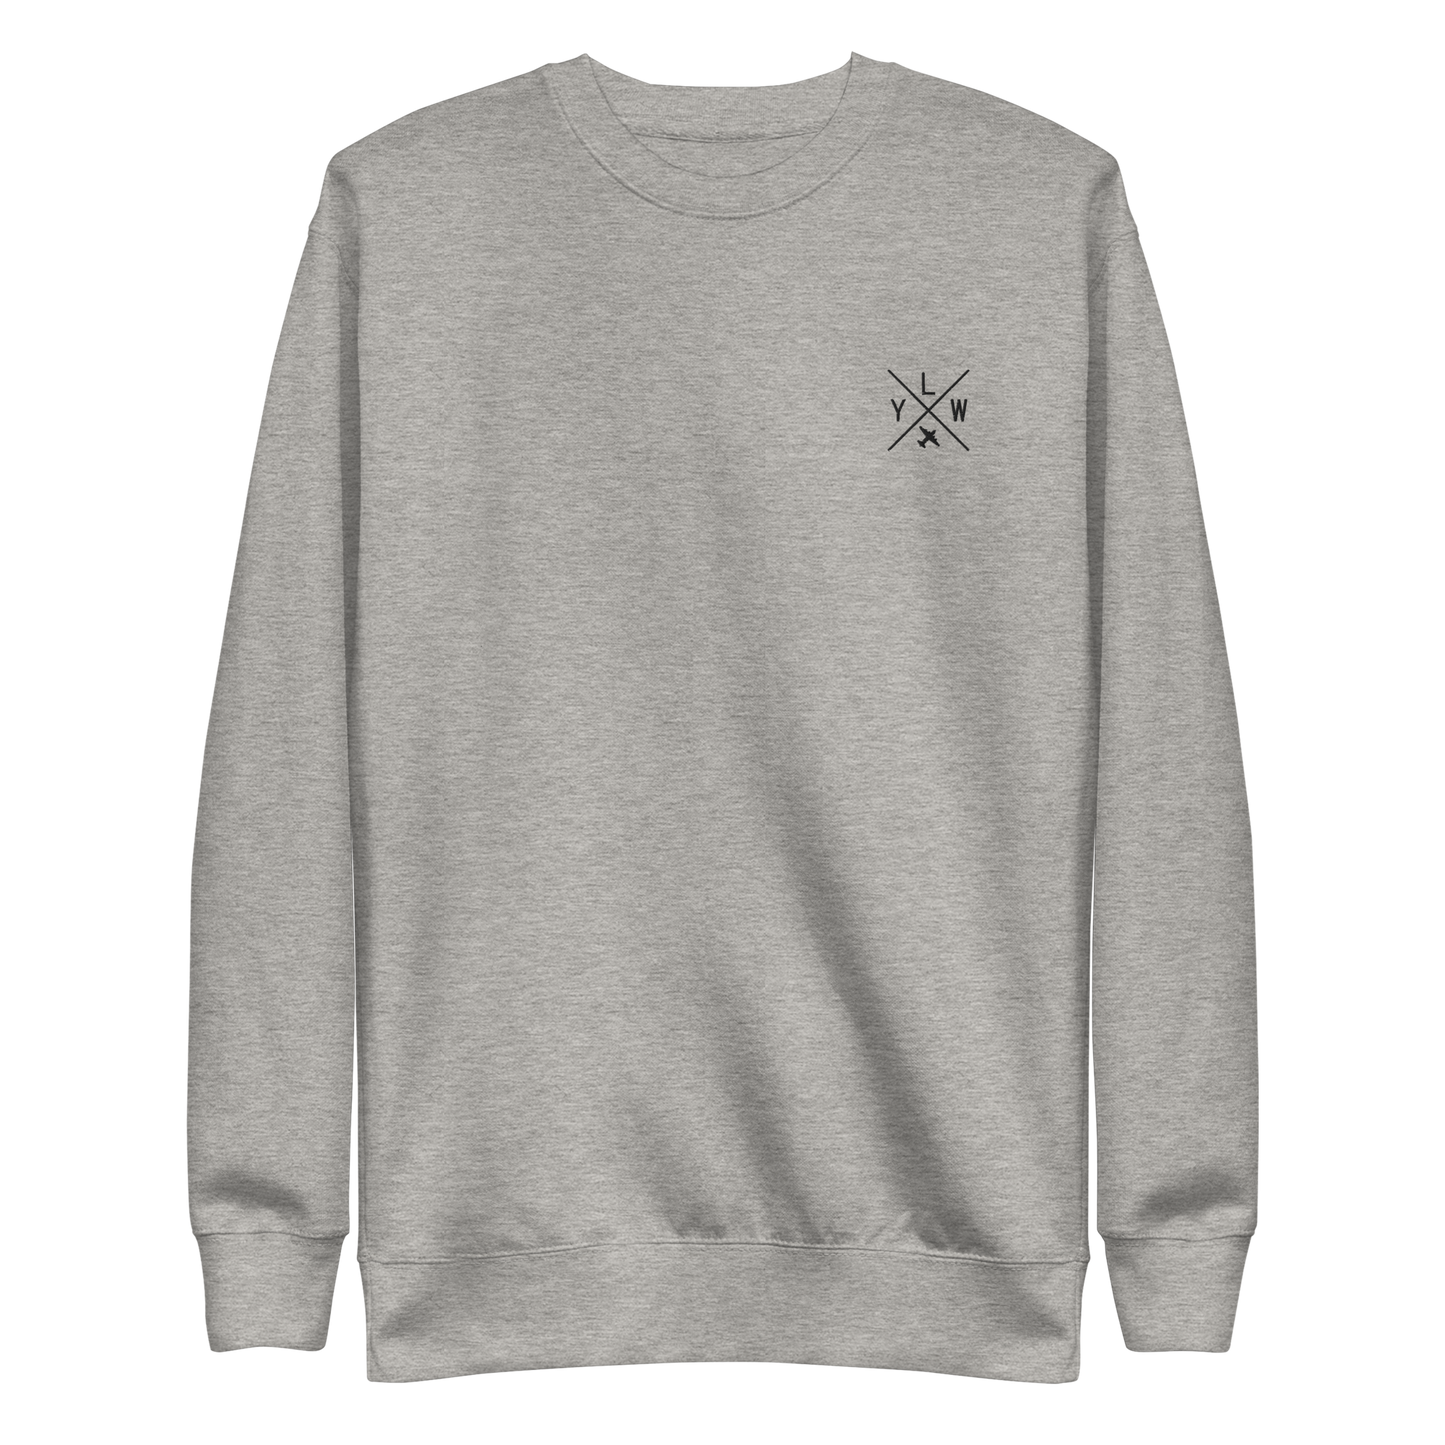 Crossed-X Premium Sweatshirt • YLW Kelowna • YHM Designs - Image 02